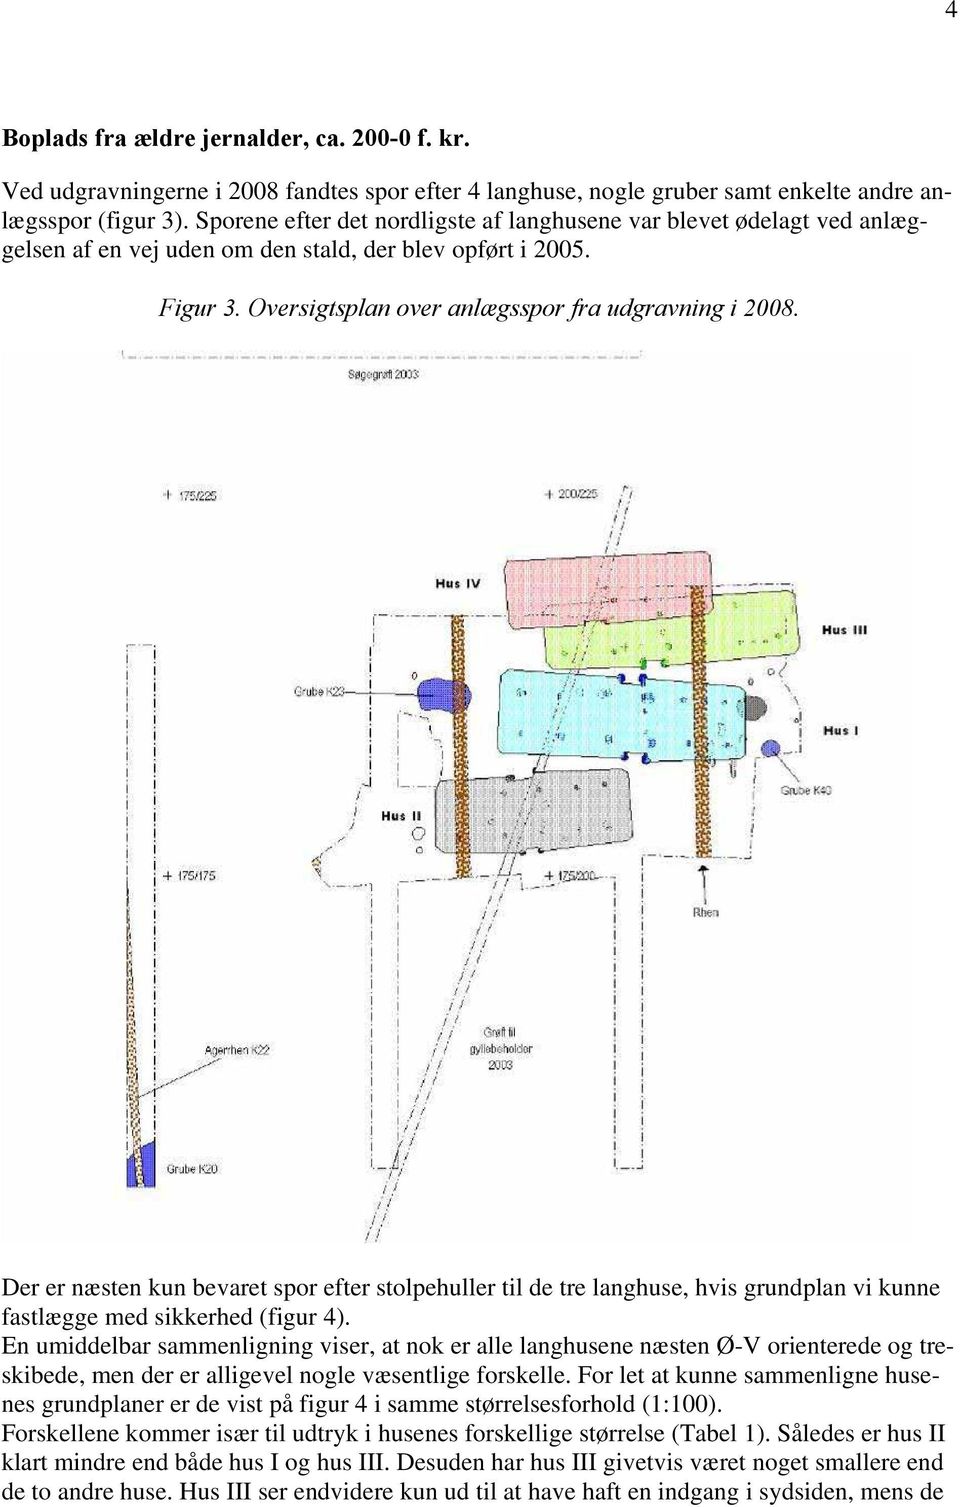 Der er næsten kun bevaret spor efter stolpehuller til de tre langhuse, hvis grundplan vi kunne fastlægge med sikkerhed (figur 4).